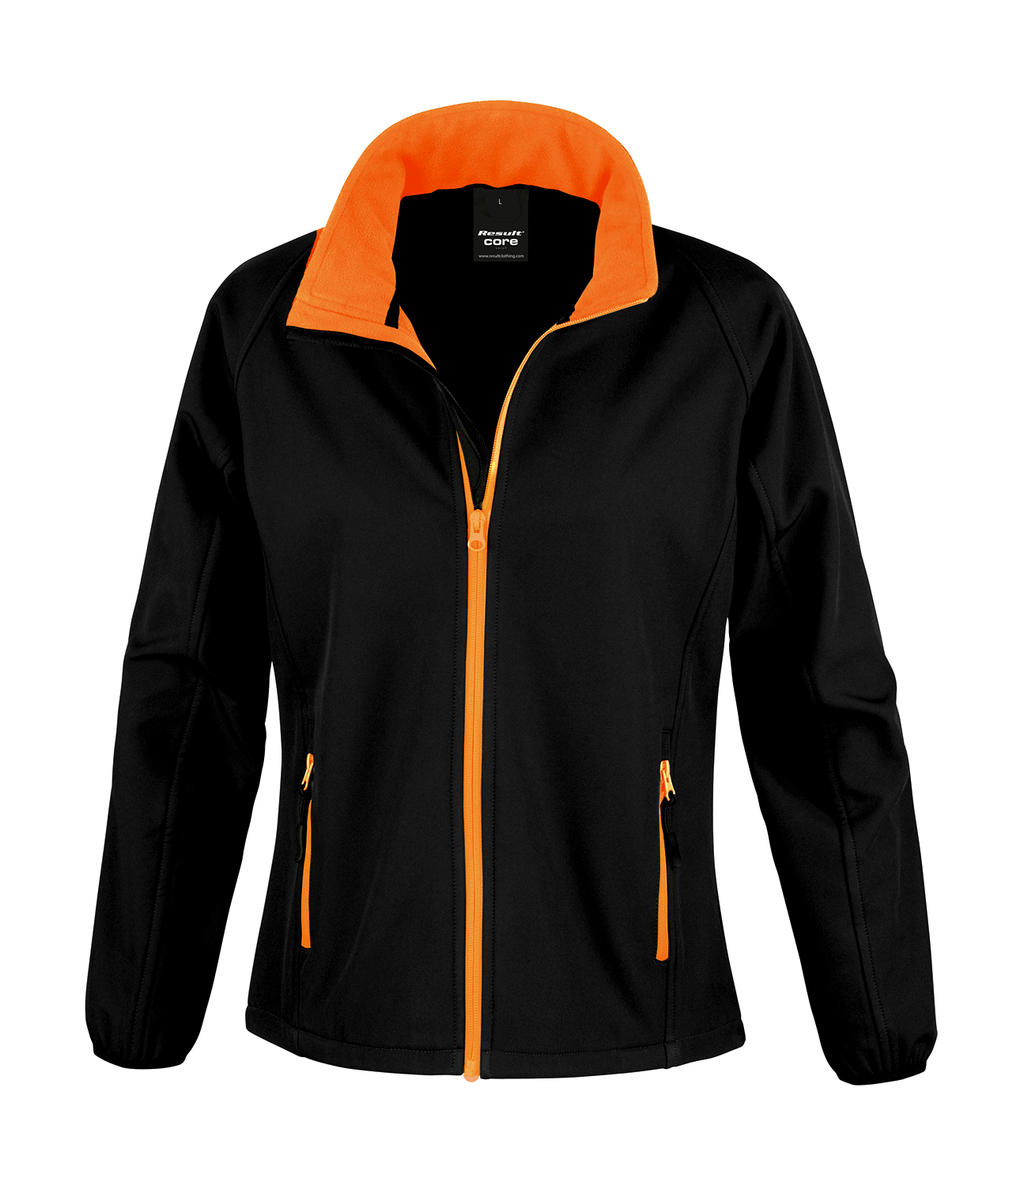  Ladies Printable Softshell Jacket in Farbe Black/Orange